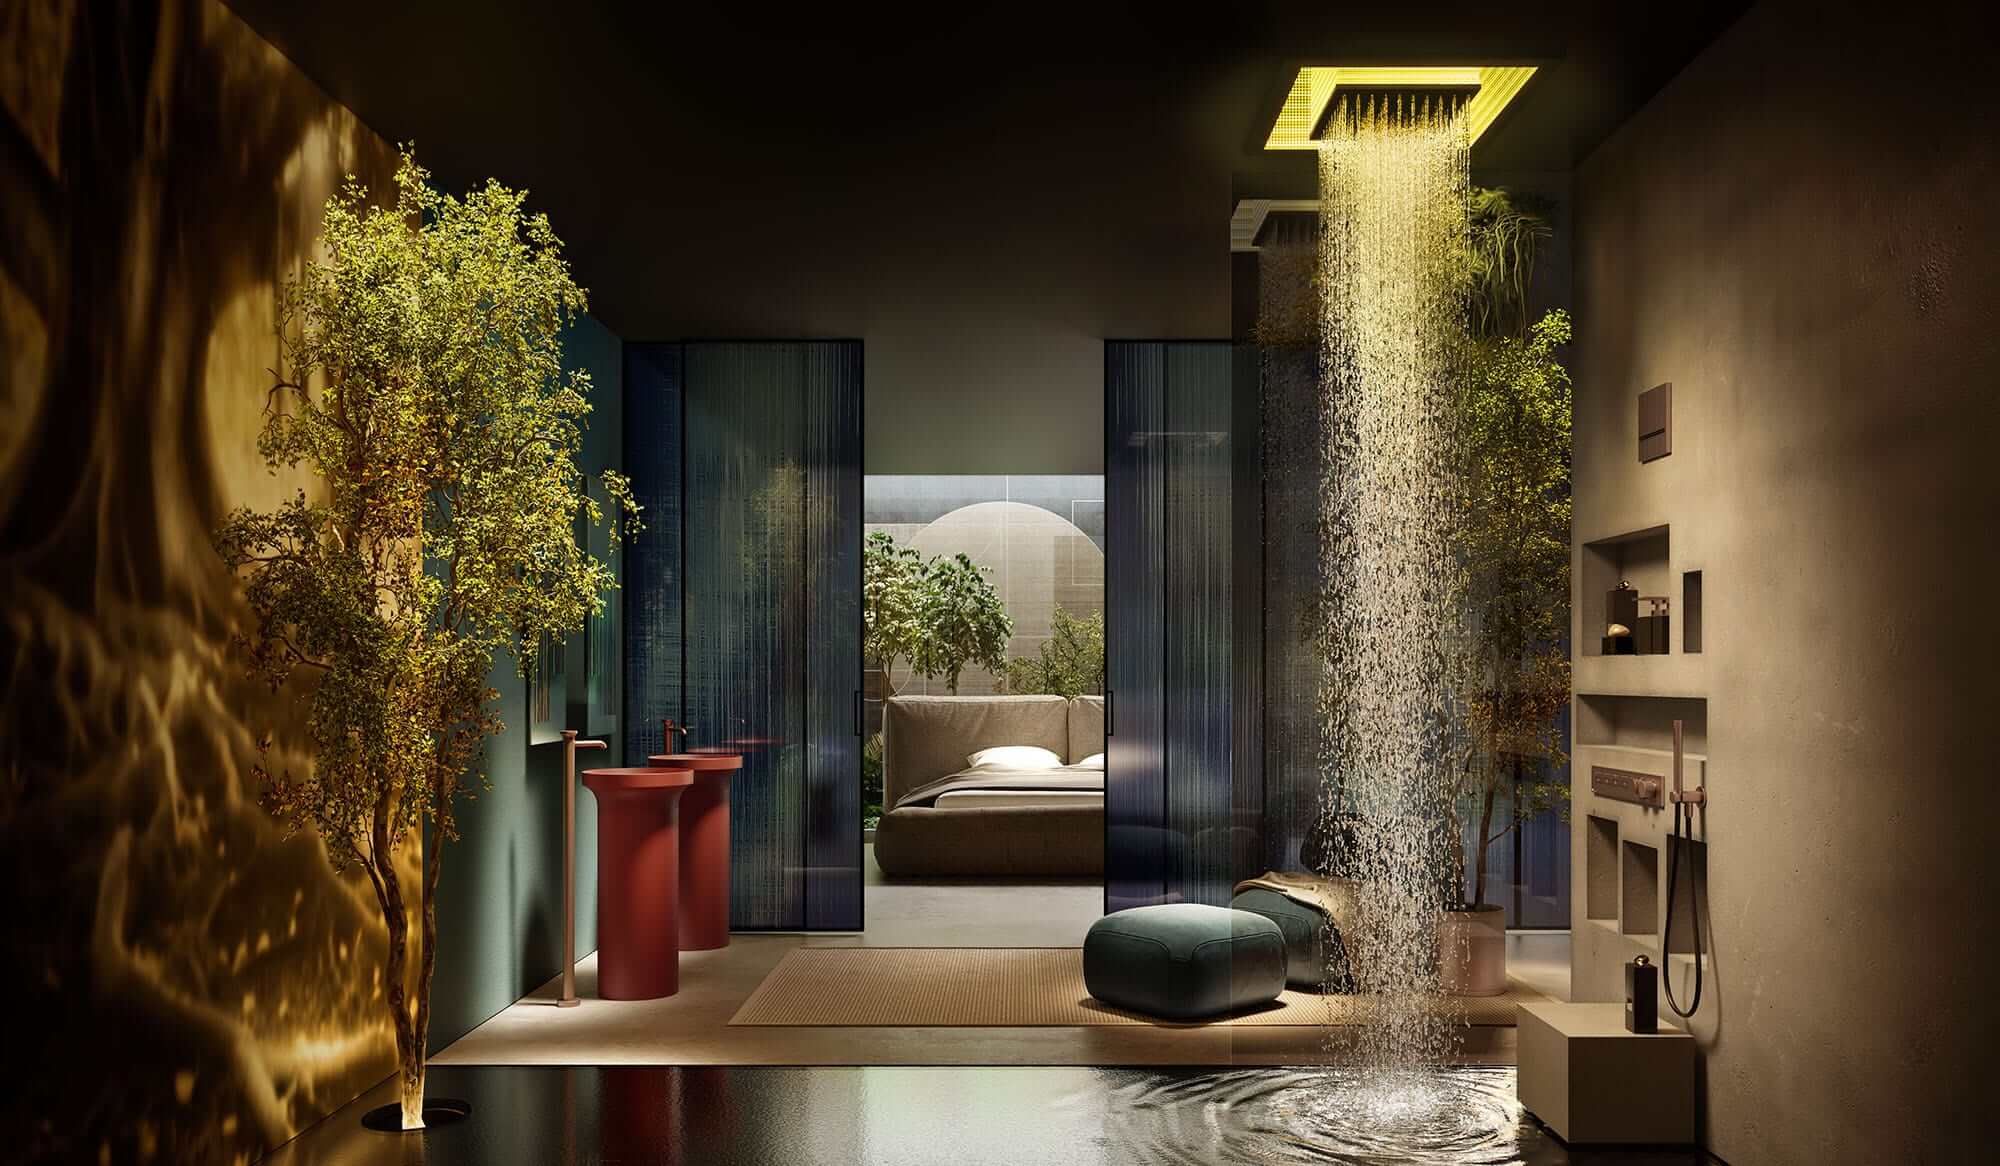 Durch semitransparente Schiebetüren abgetrenntes Bad mit Regendusche und Pflanzen